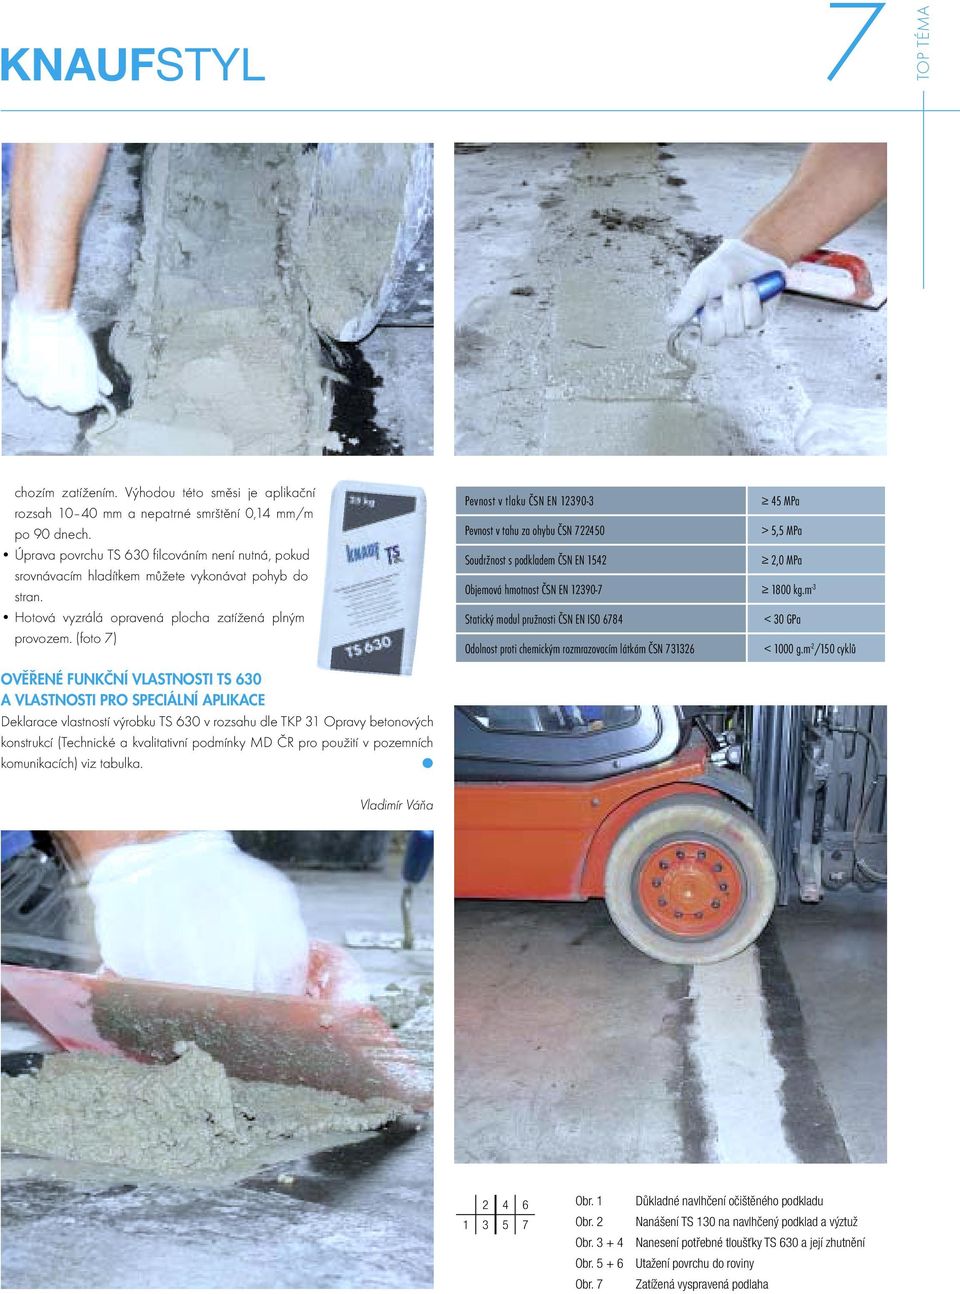 (foto 7) OVĚŘENÉ FUNKČNÍ VLASTNOSTI TS 630 A VLASTNOSTI PRO SPECIÁLNÍ APLIKACE Deklarace vlastností výrobku TS 630 v rozsahu dle TKP 31 Opravy betonových konstrukcí (Technické a kvalitativní podmínky